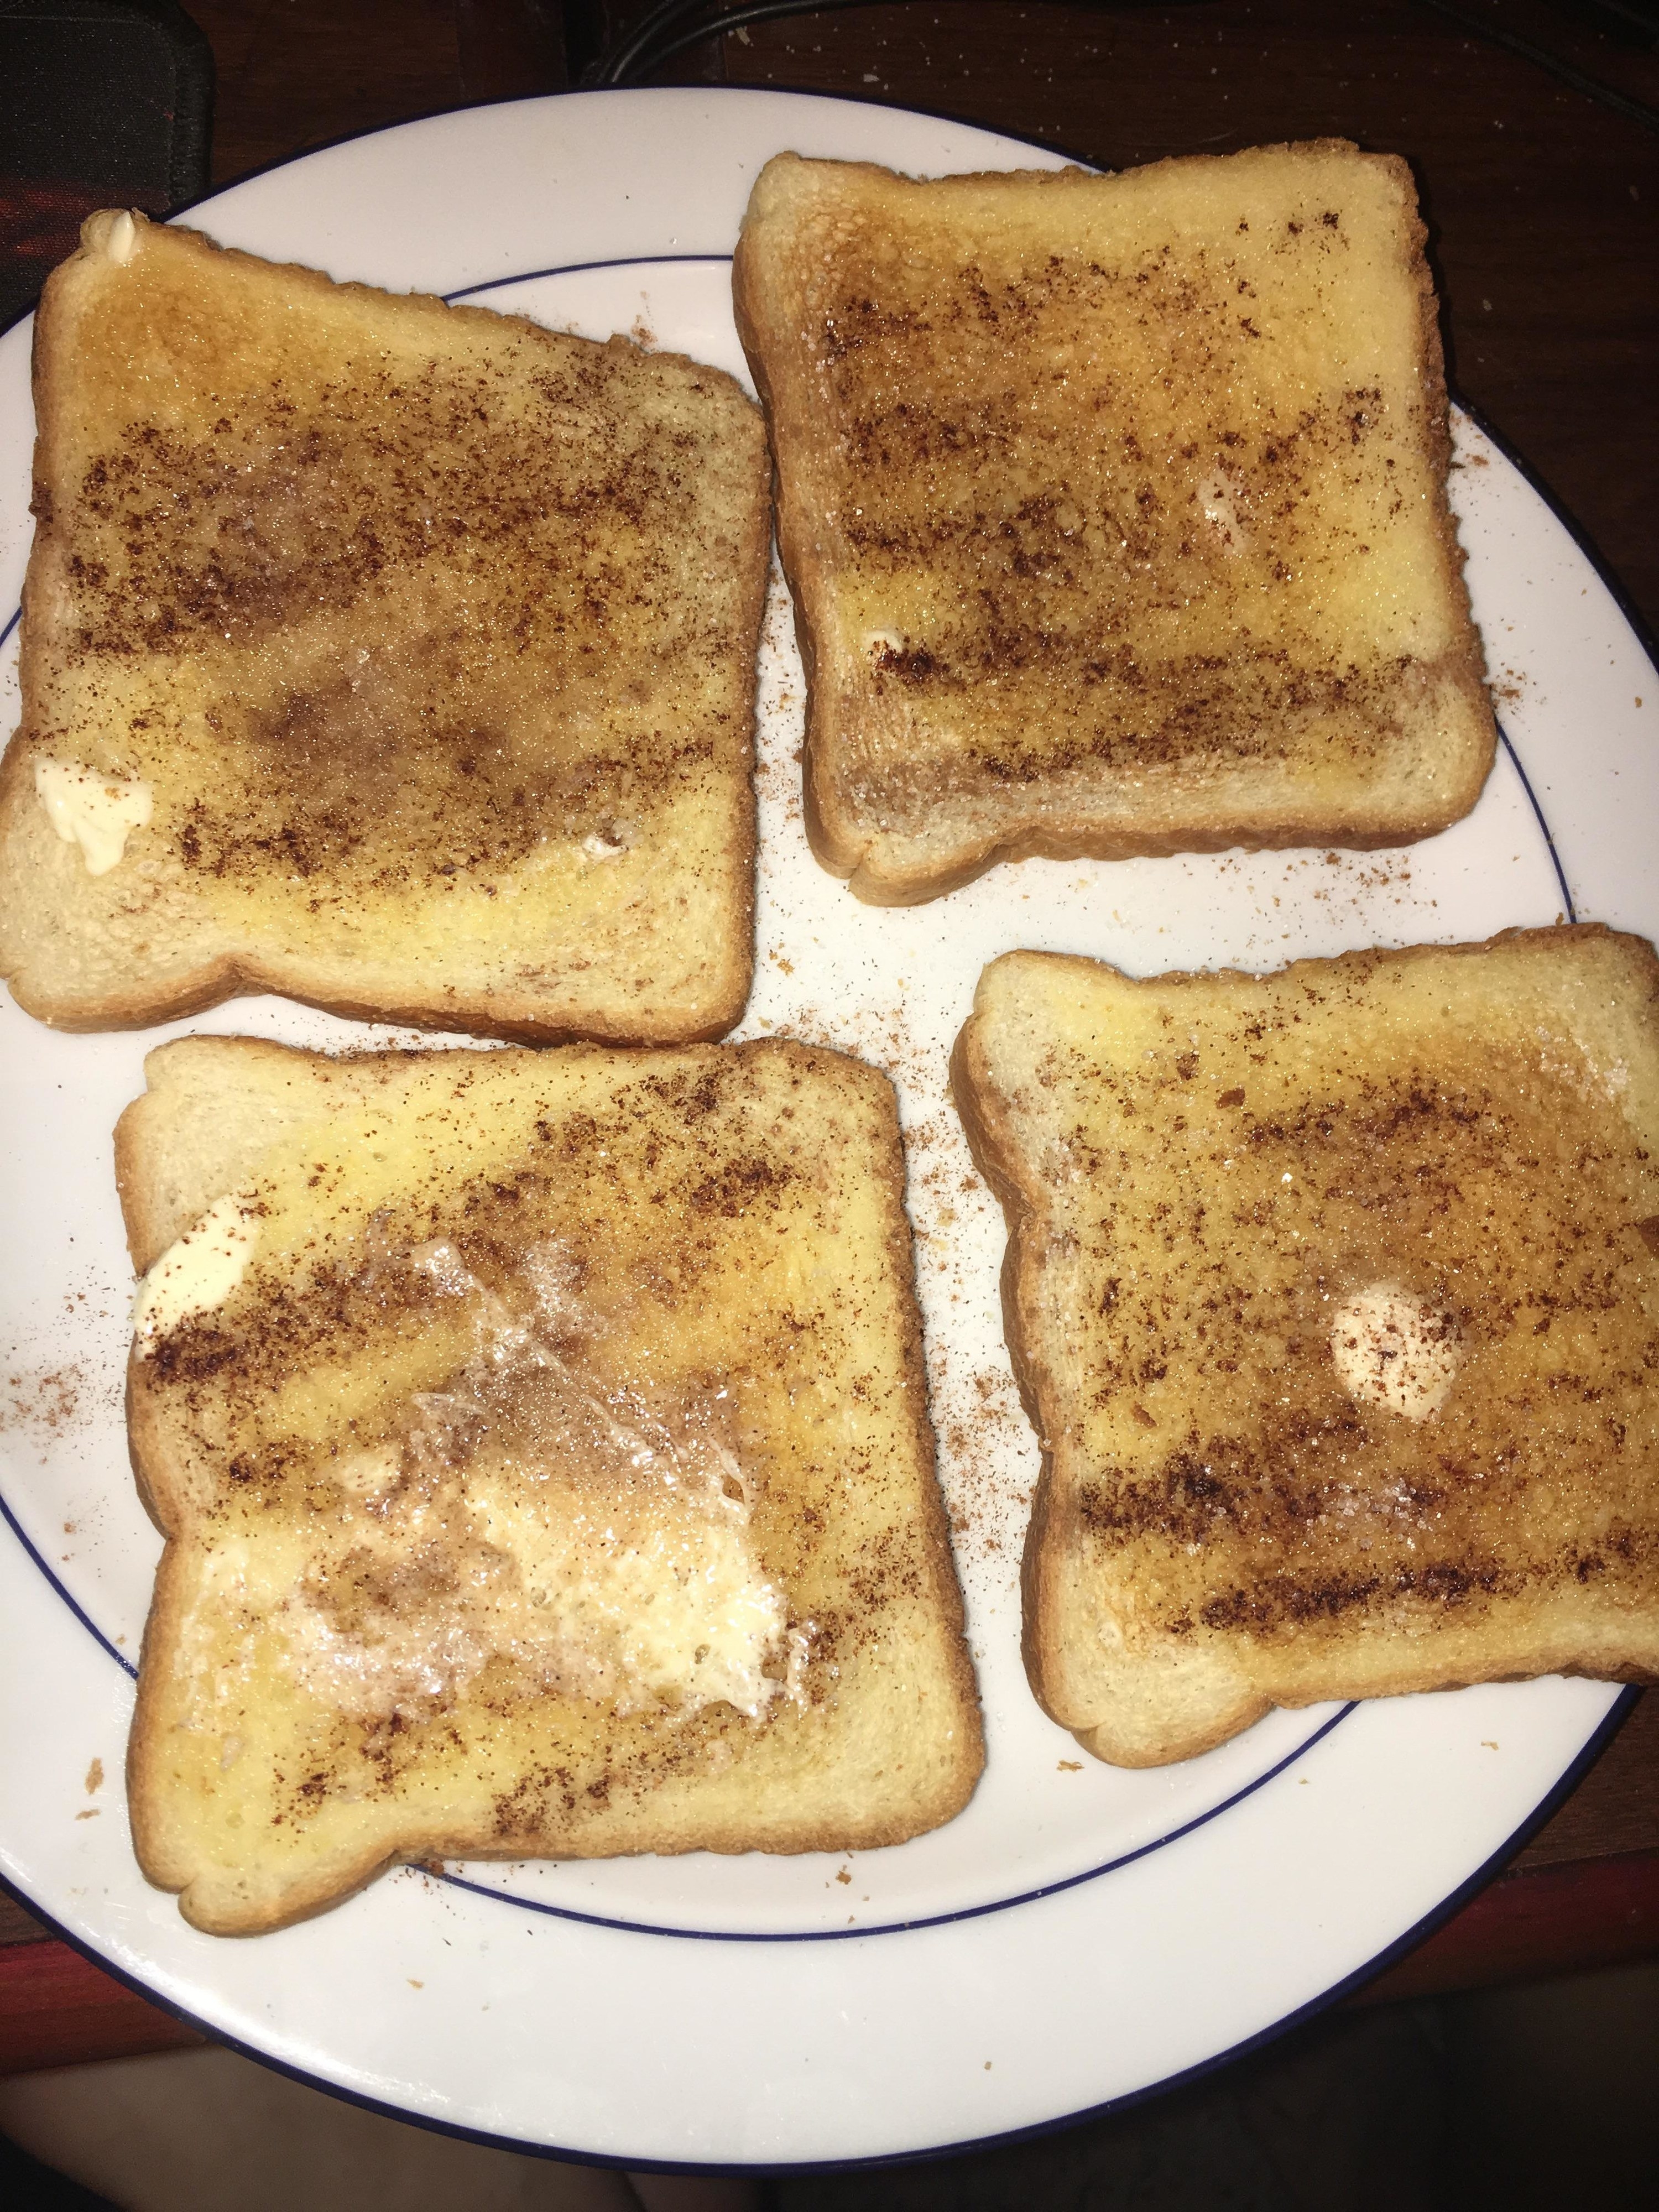 Slices of cinnamon toast.